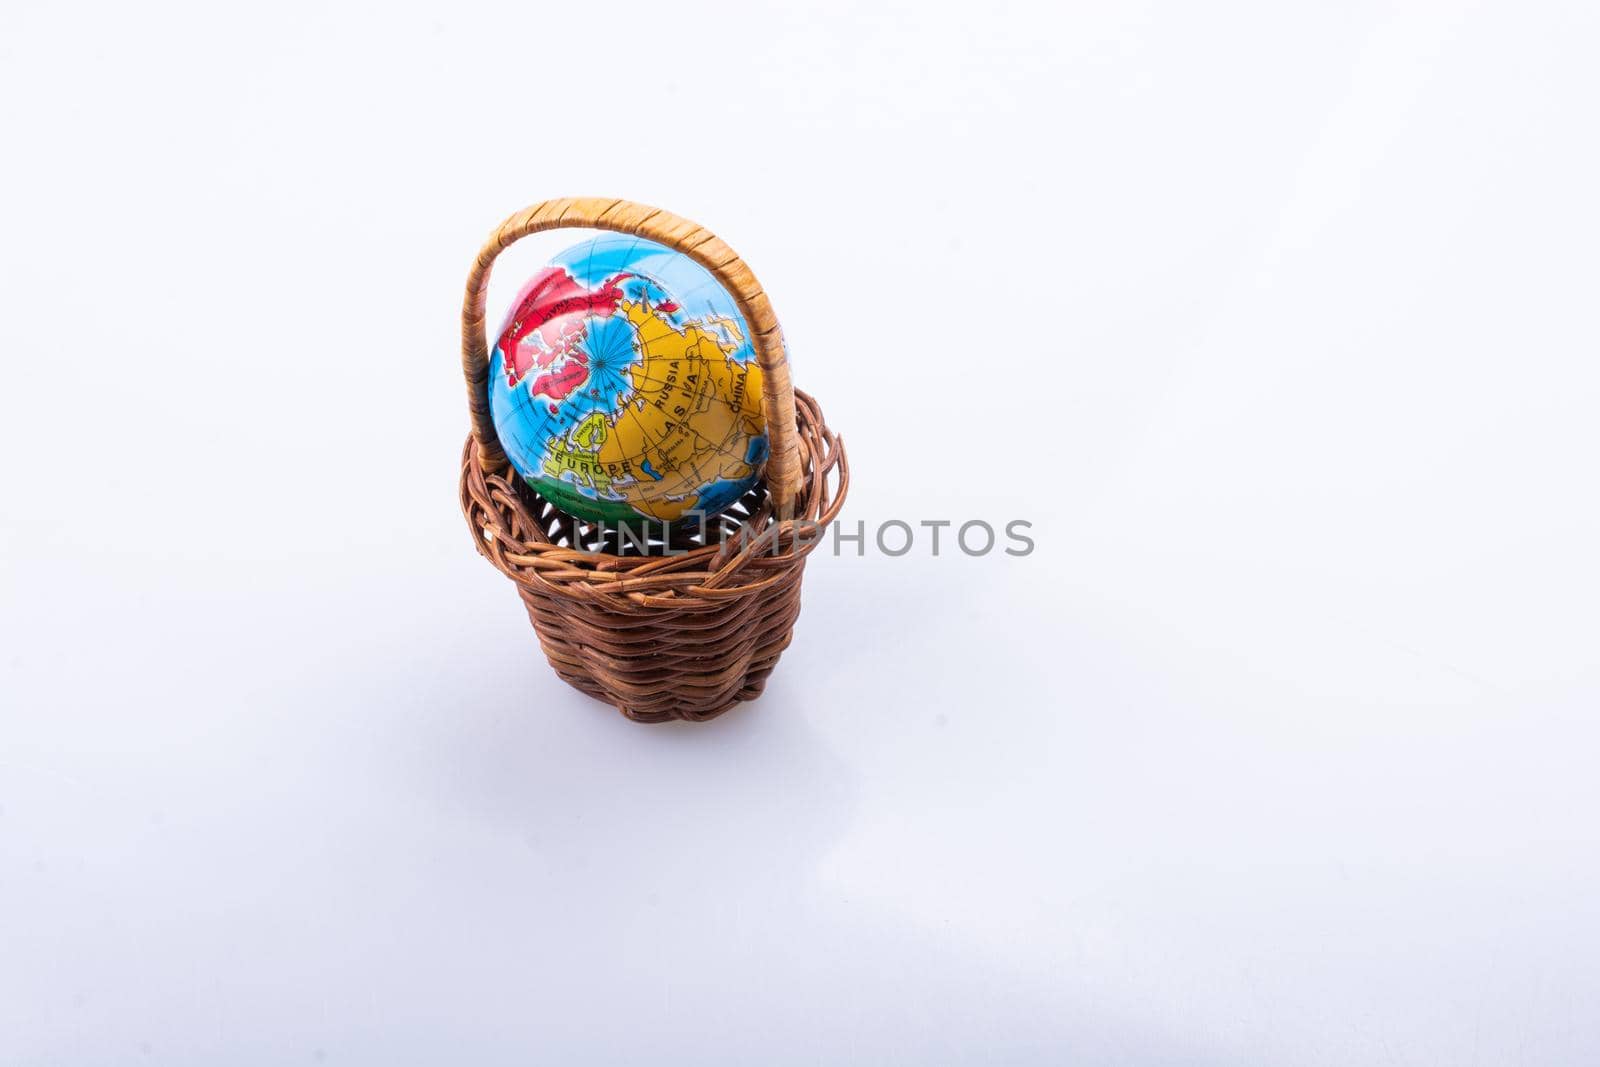 Little model globe in a basket in view